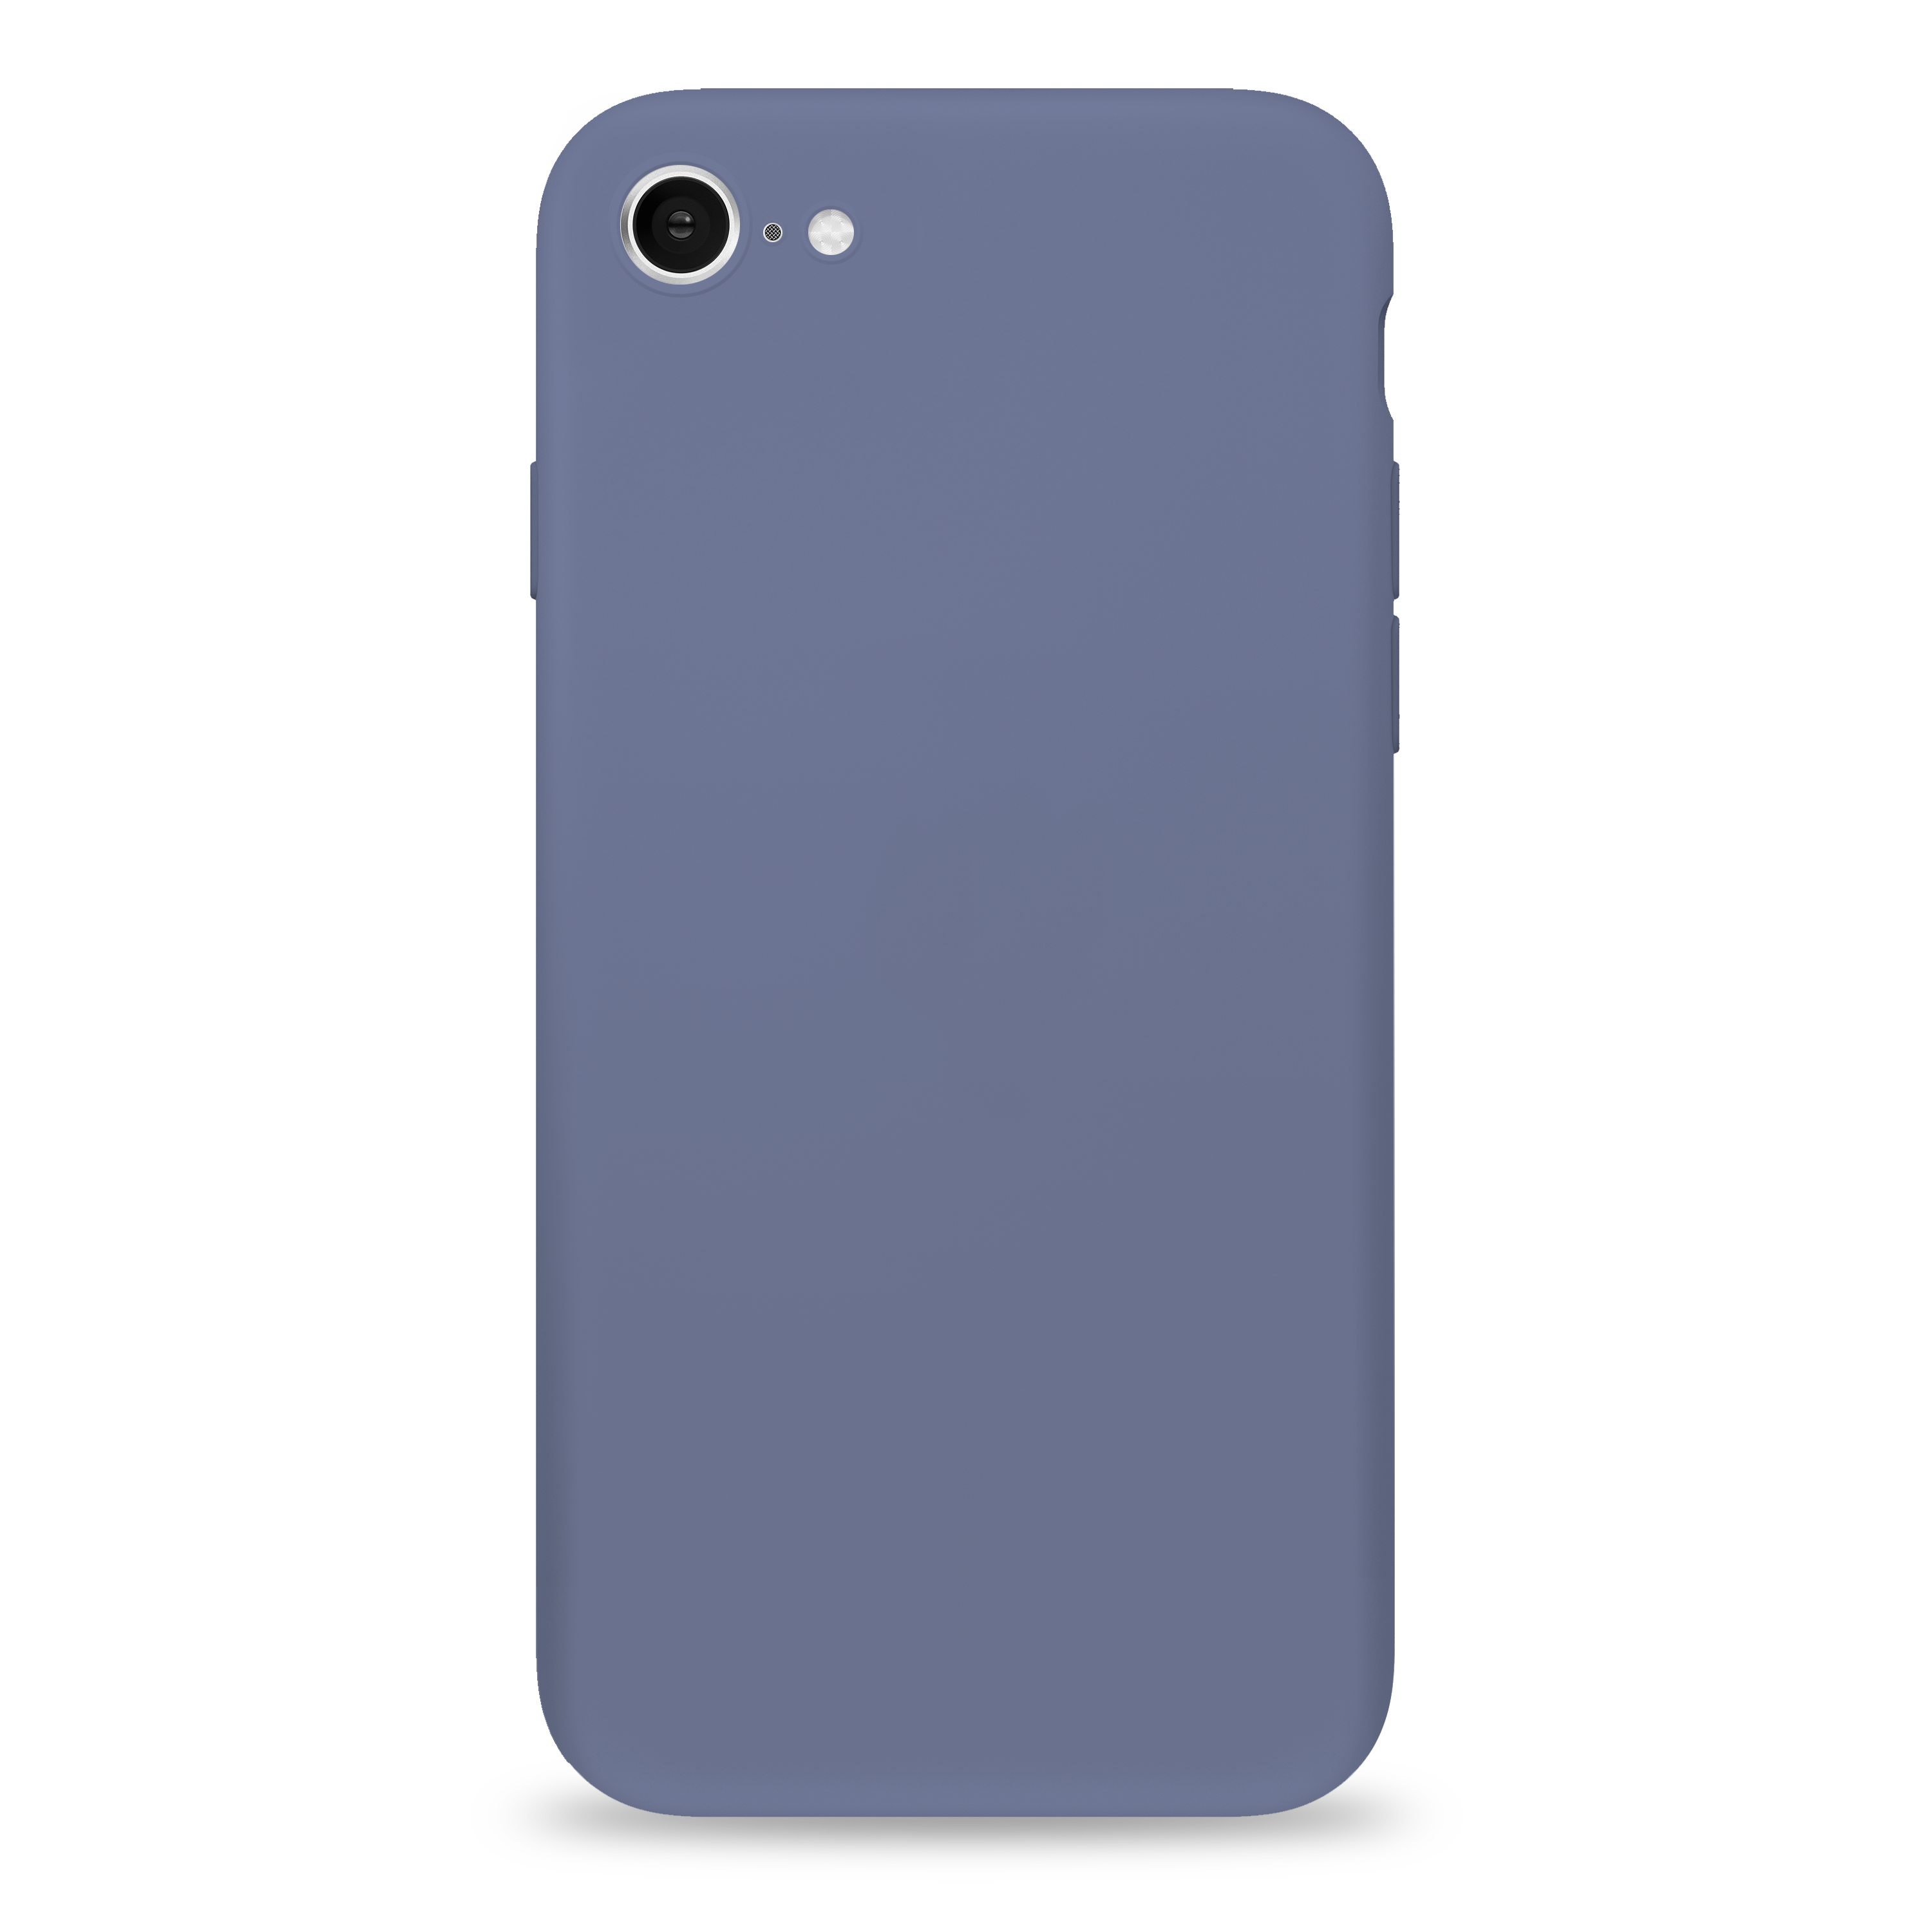 Inspecteur Vergelijken profiel iPhone 7 silicone case - Seamless phone cover – Deft Materials